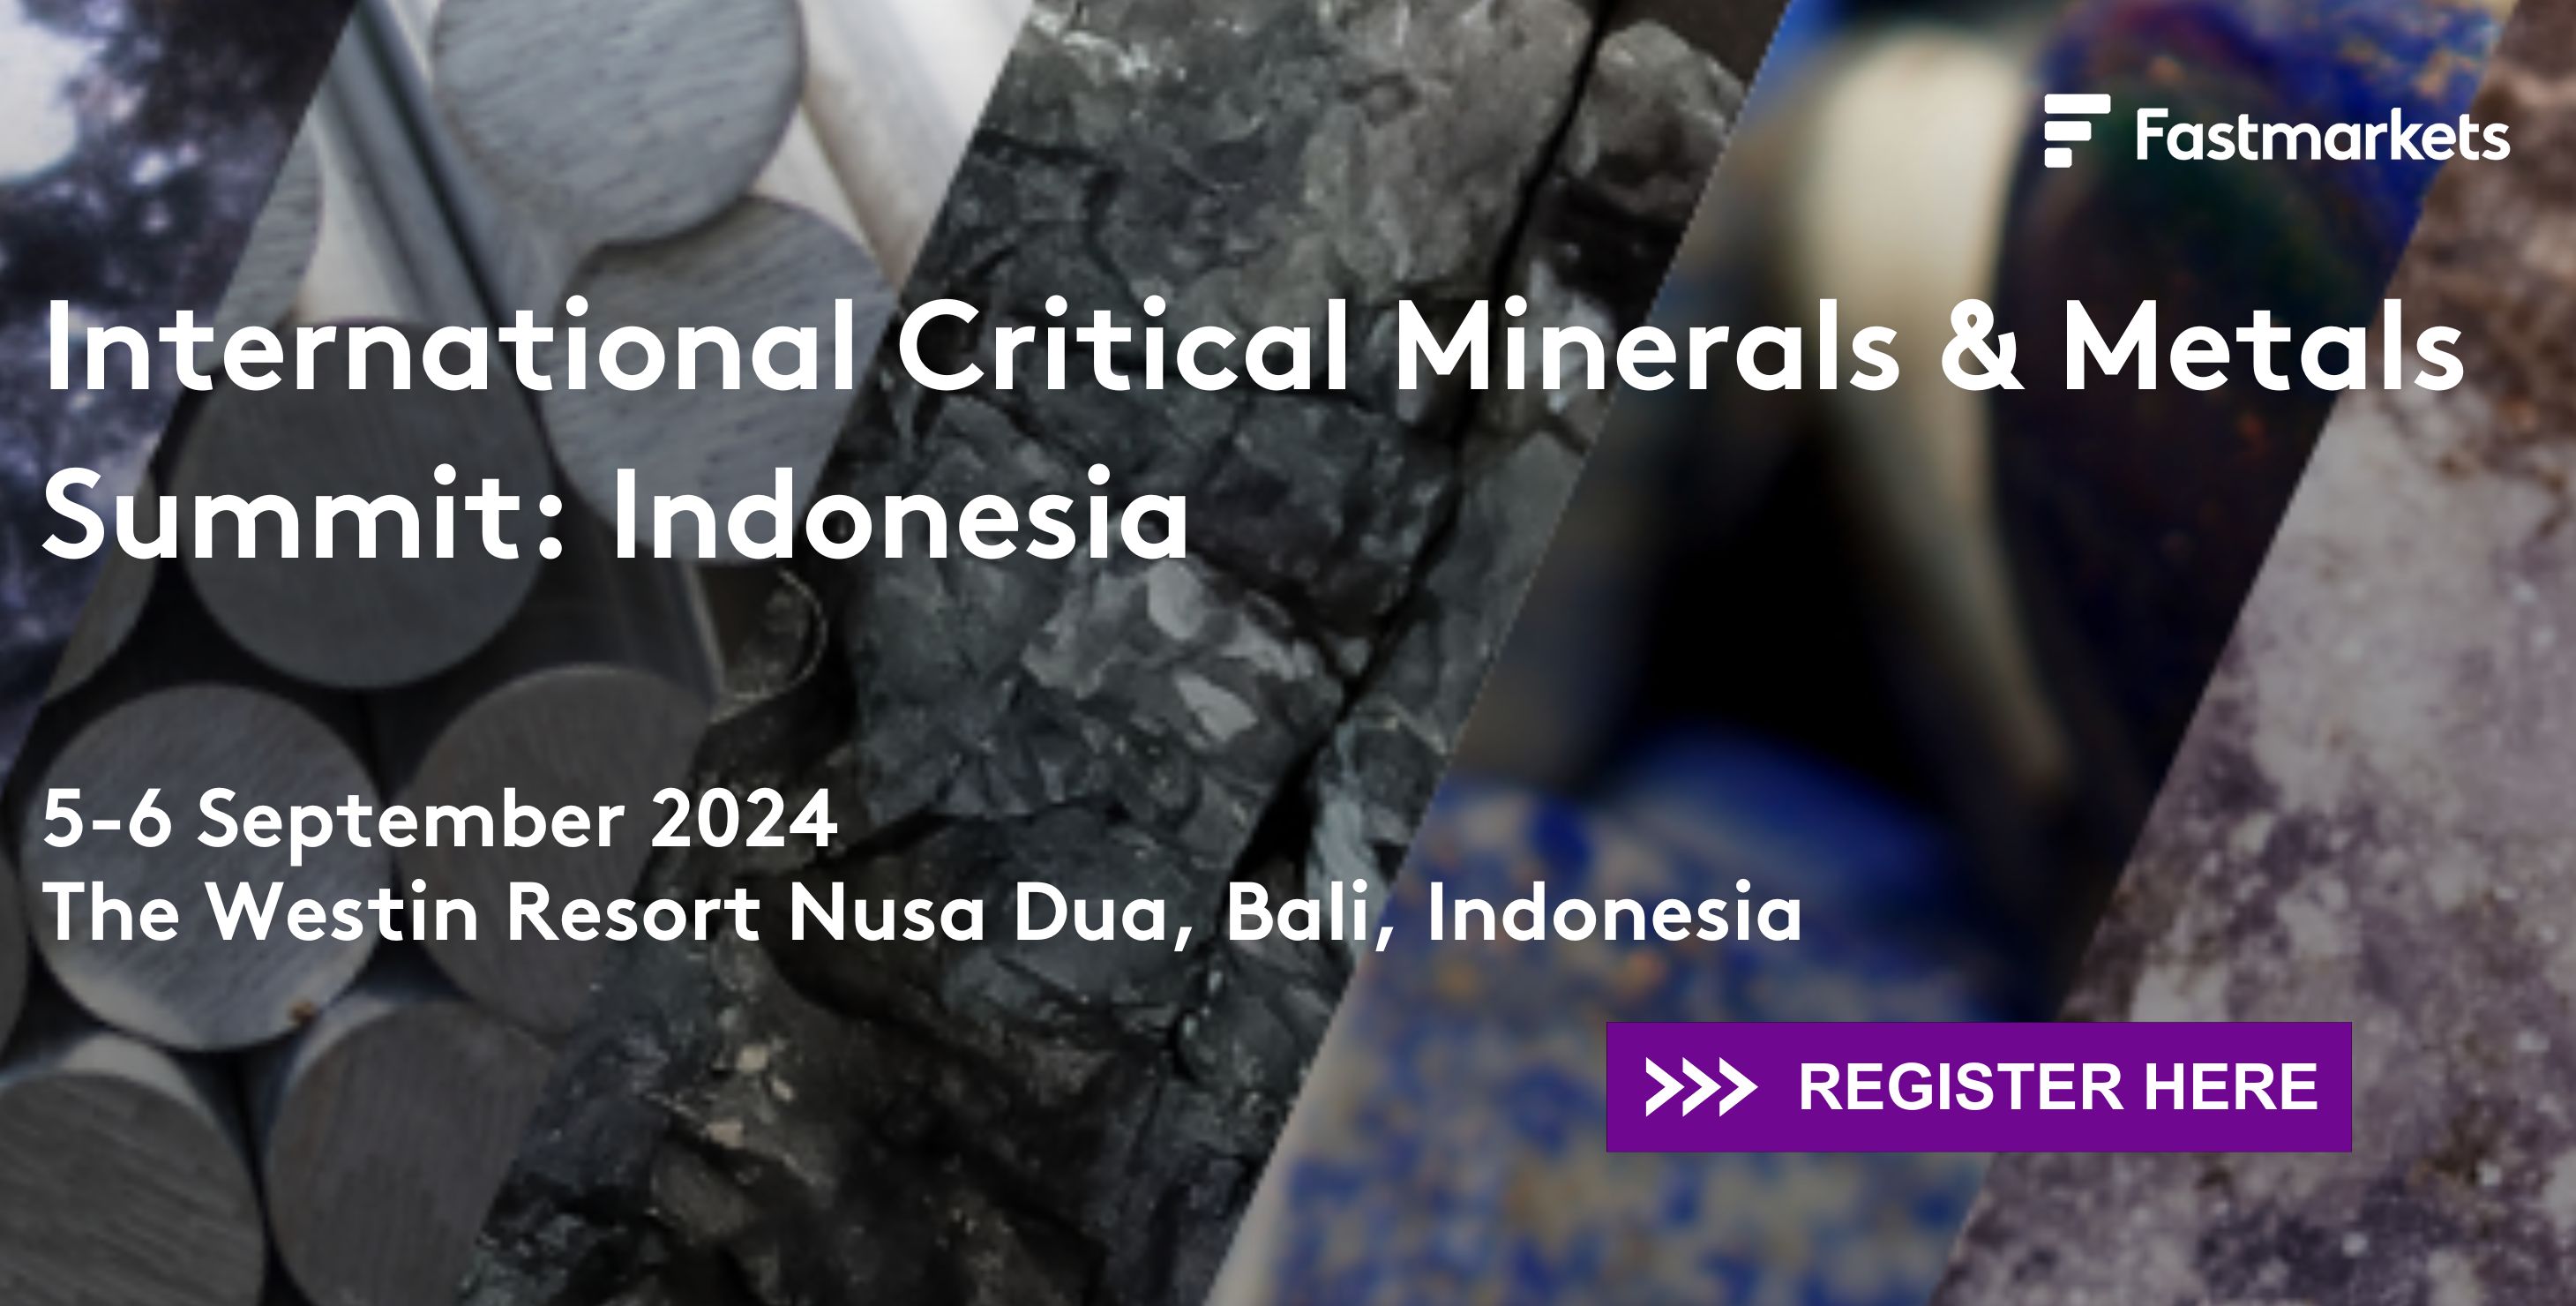 International Critical Minerals & Metals